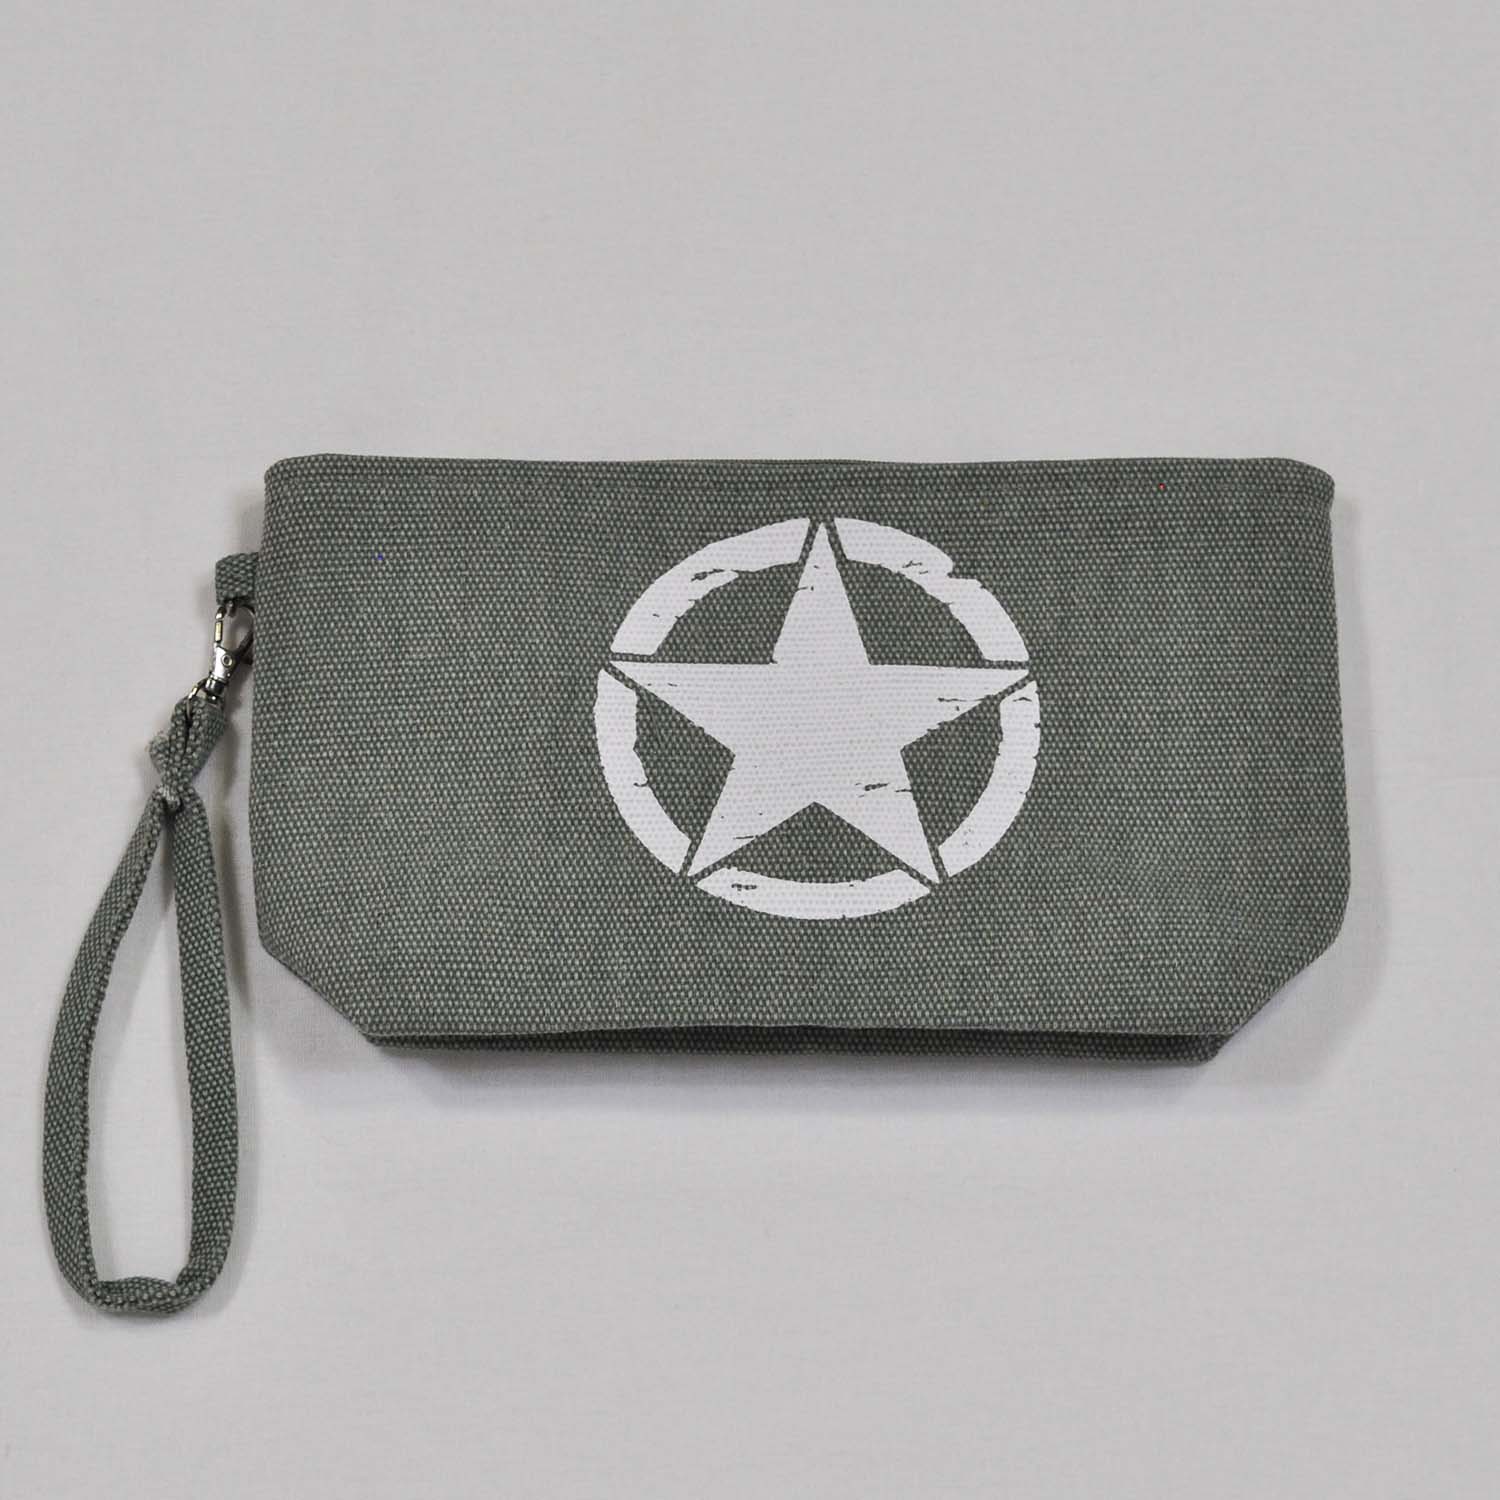 Kaki star coin purse